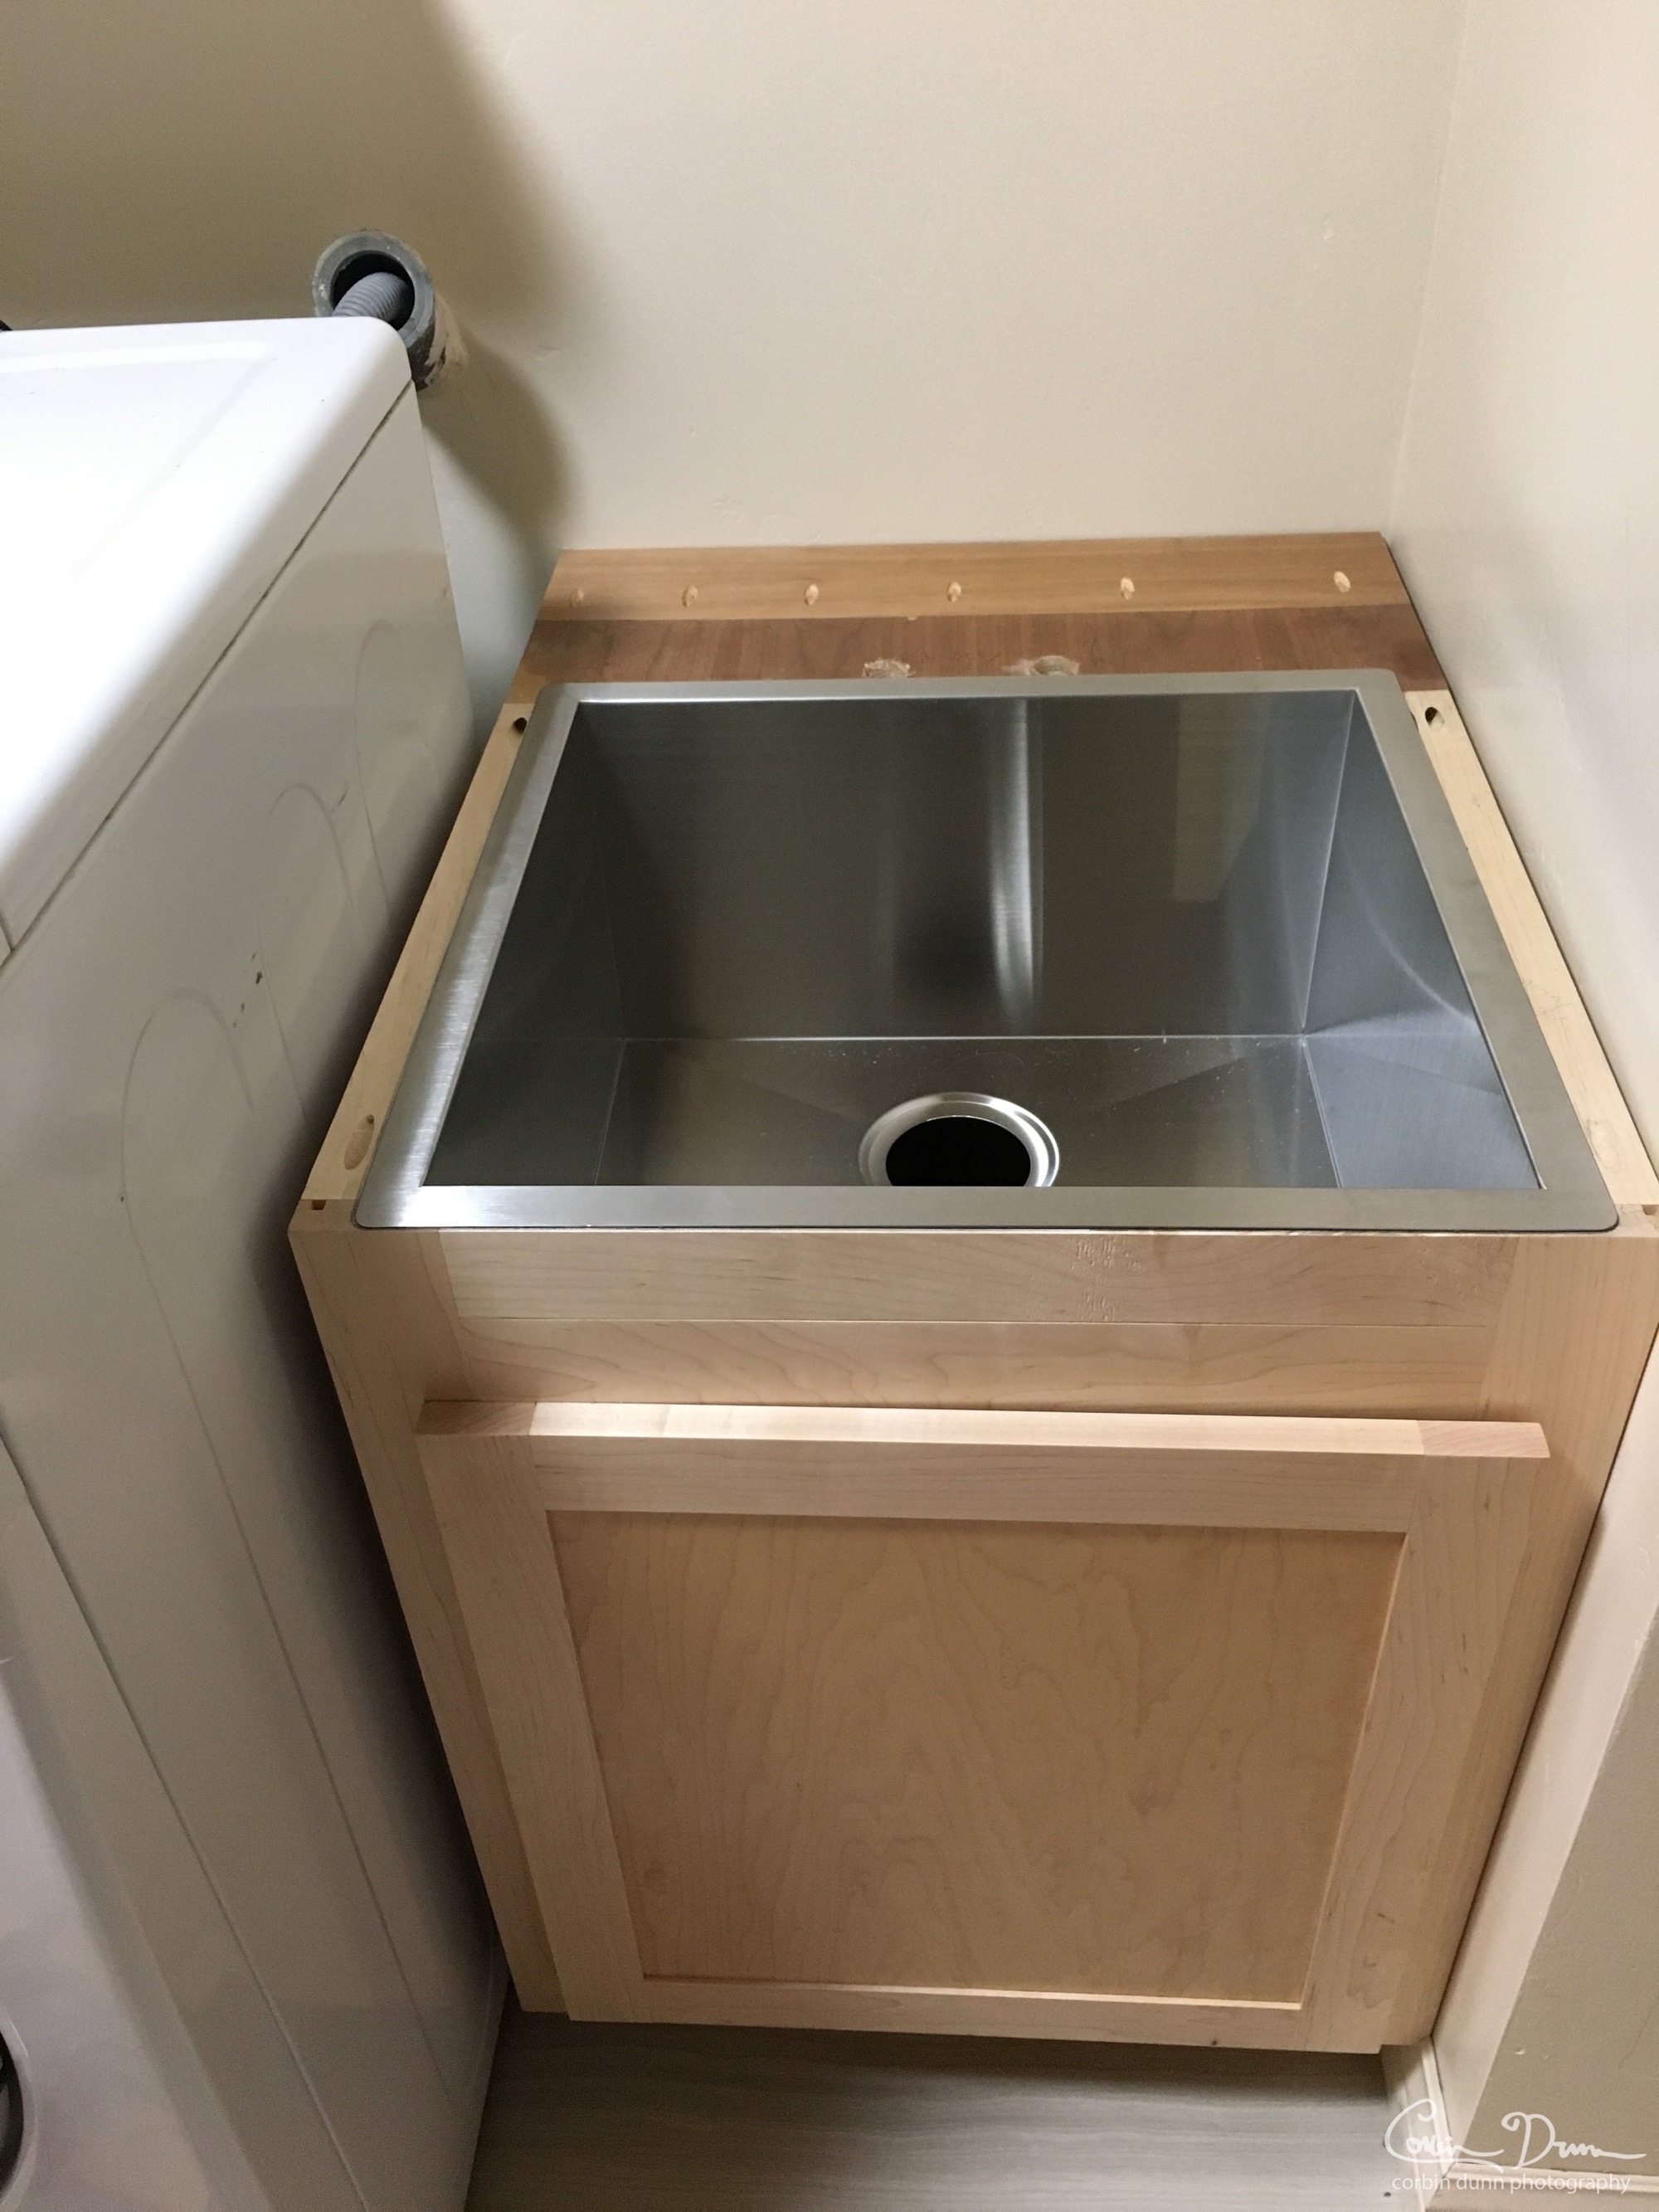 Sink installed